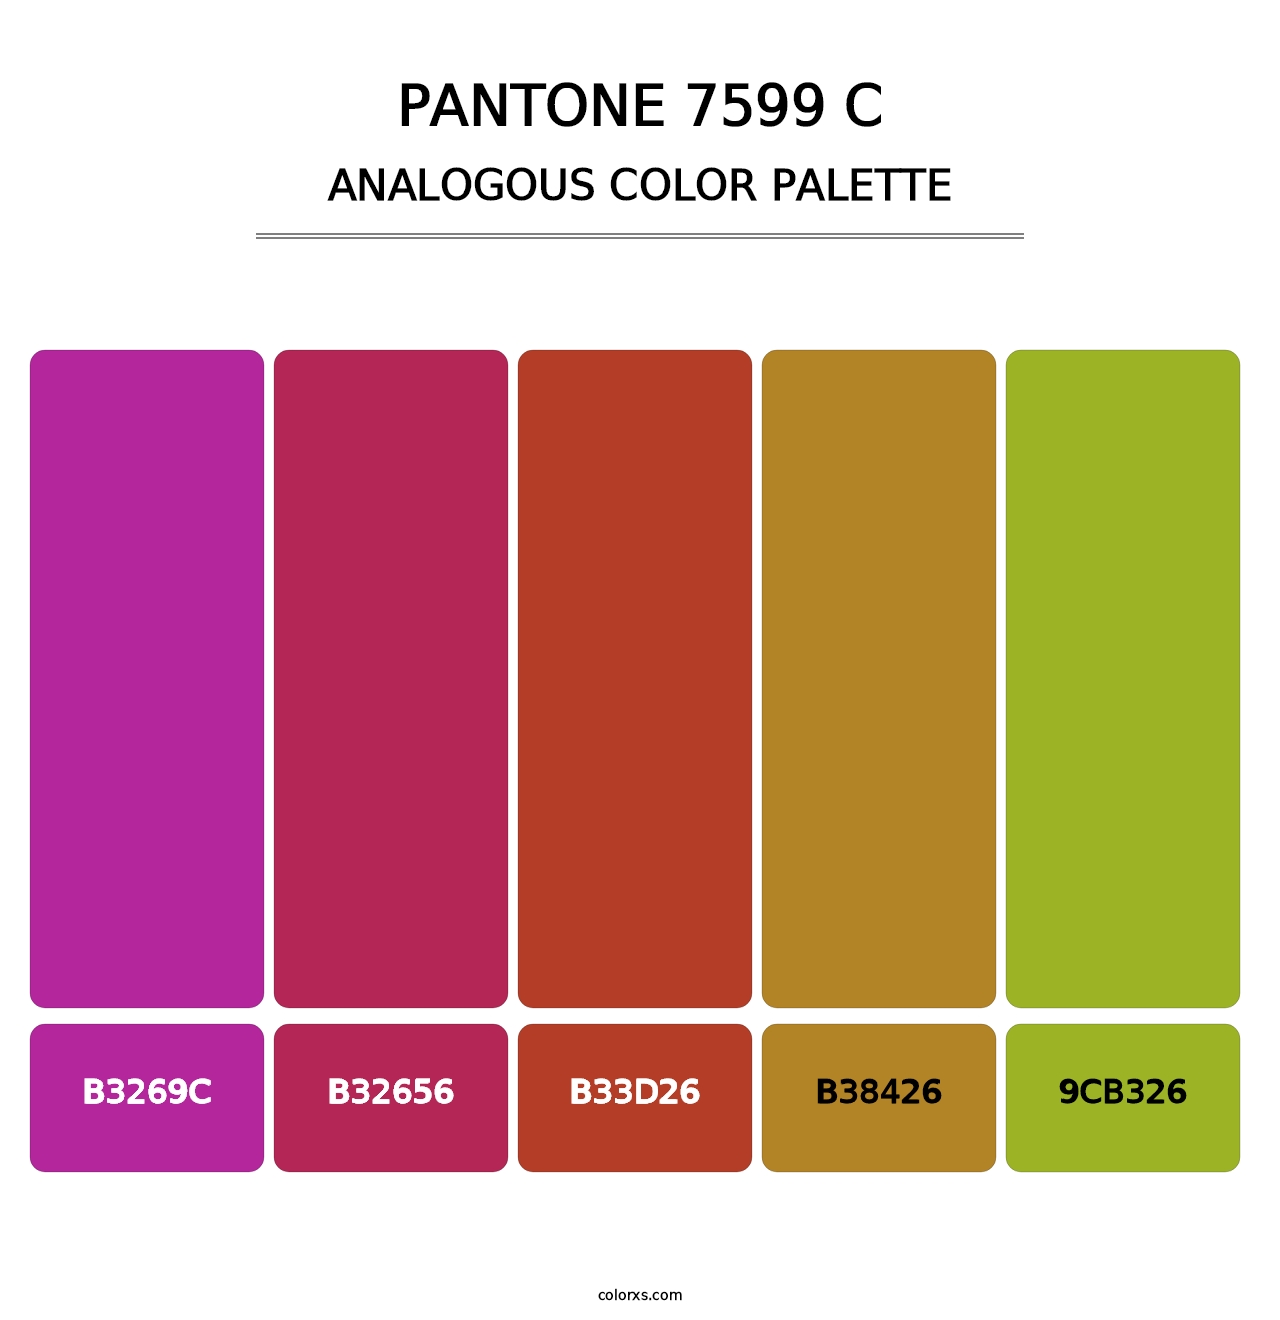 PANTONE 7599 C - Analogous Color Palette